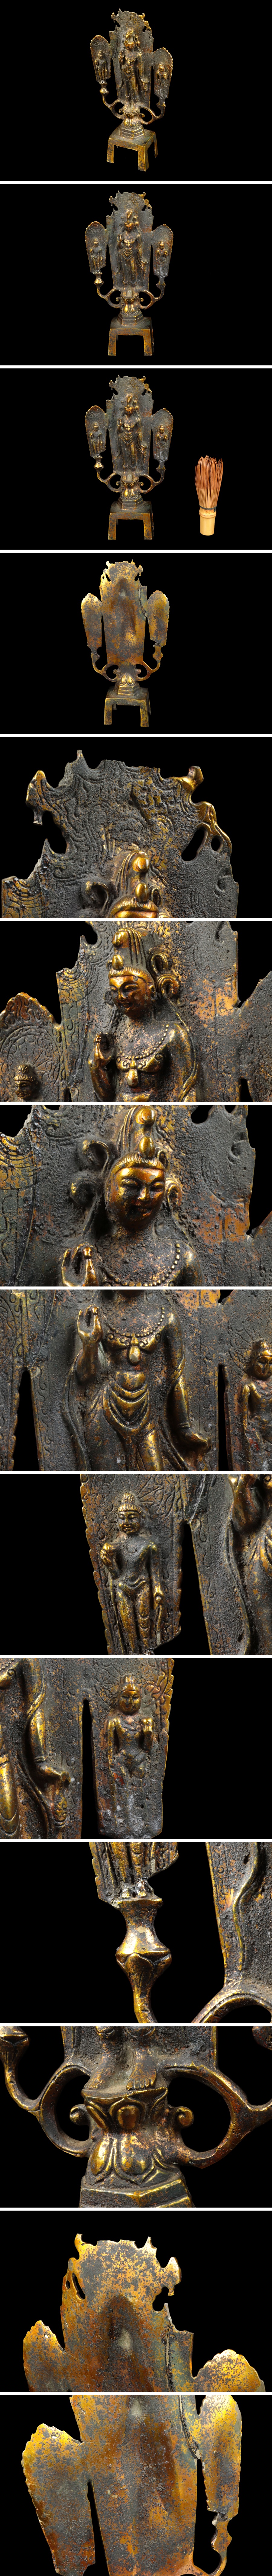 安い送料無料仏教美術 銅器 塗金 菩薩像 仏像 置物 高さ:約23cm 骨董品 美術品 0254tfz 仏像